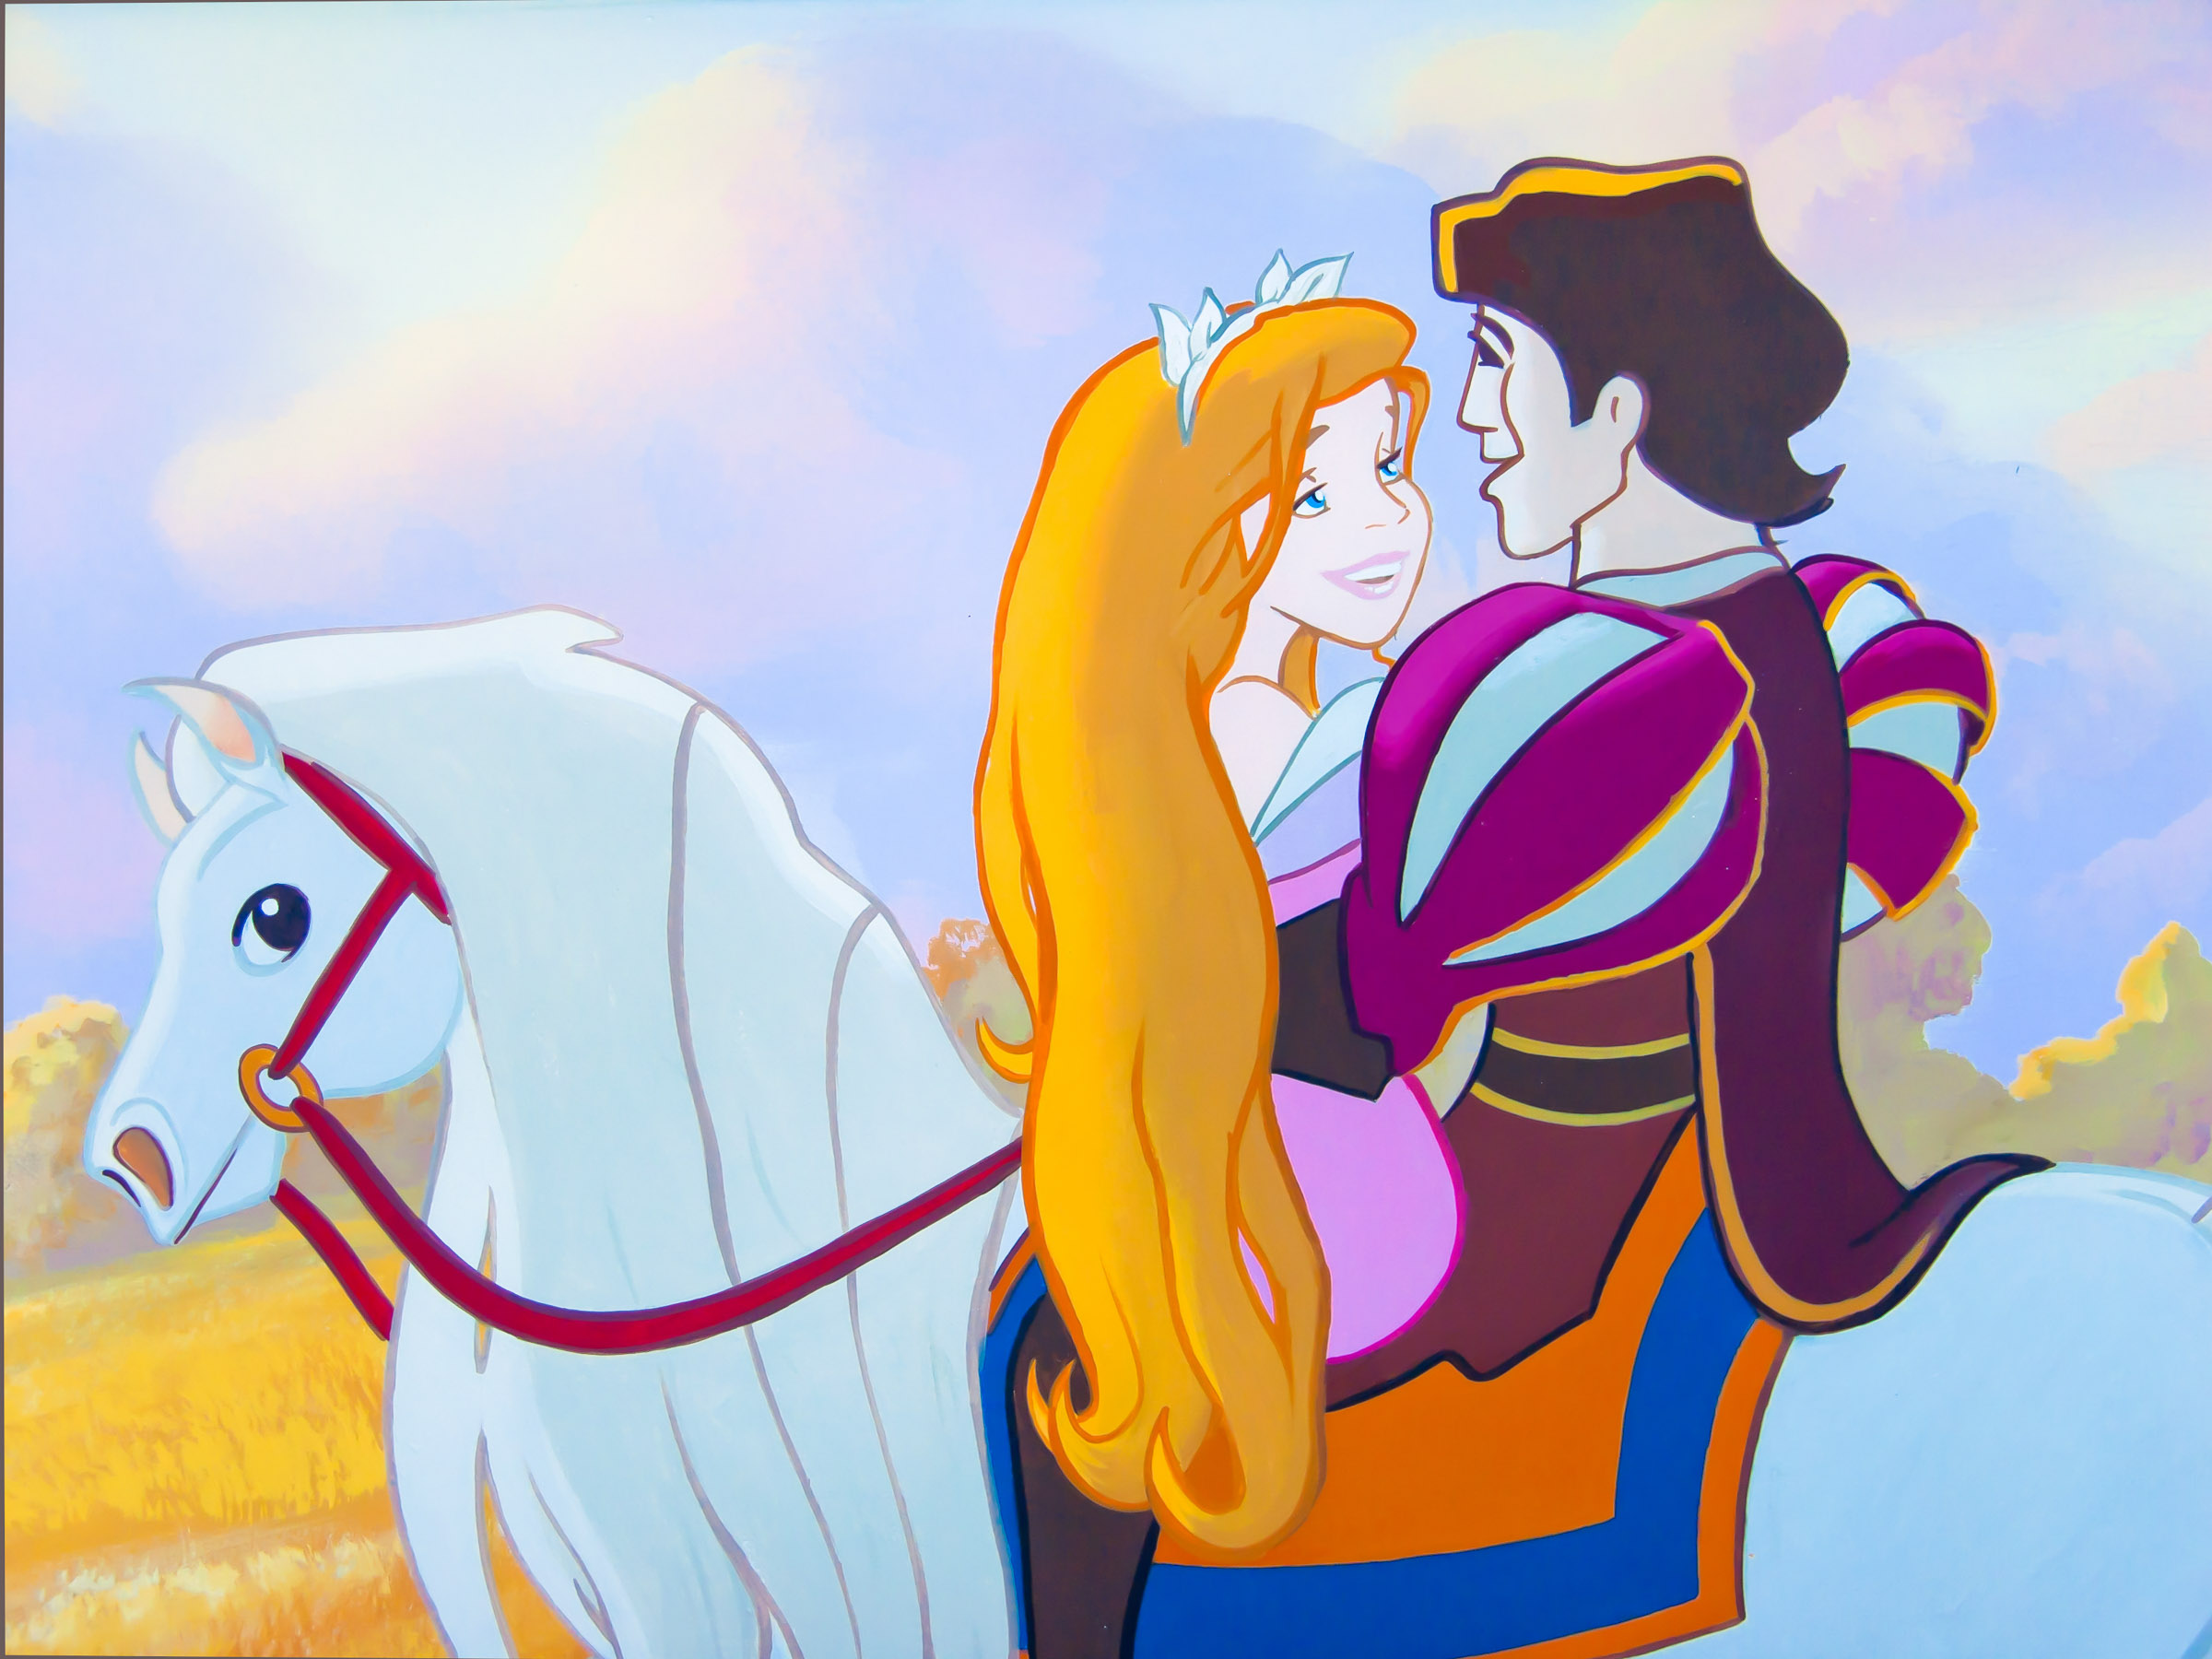 Enchanted hero and princess